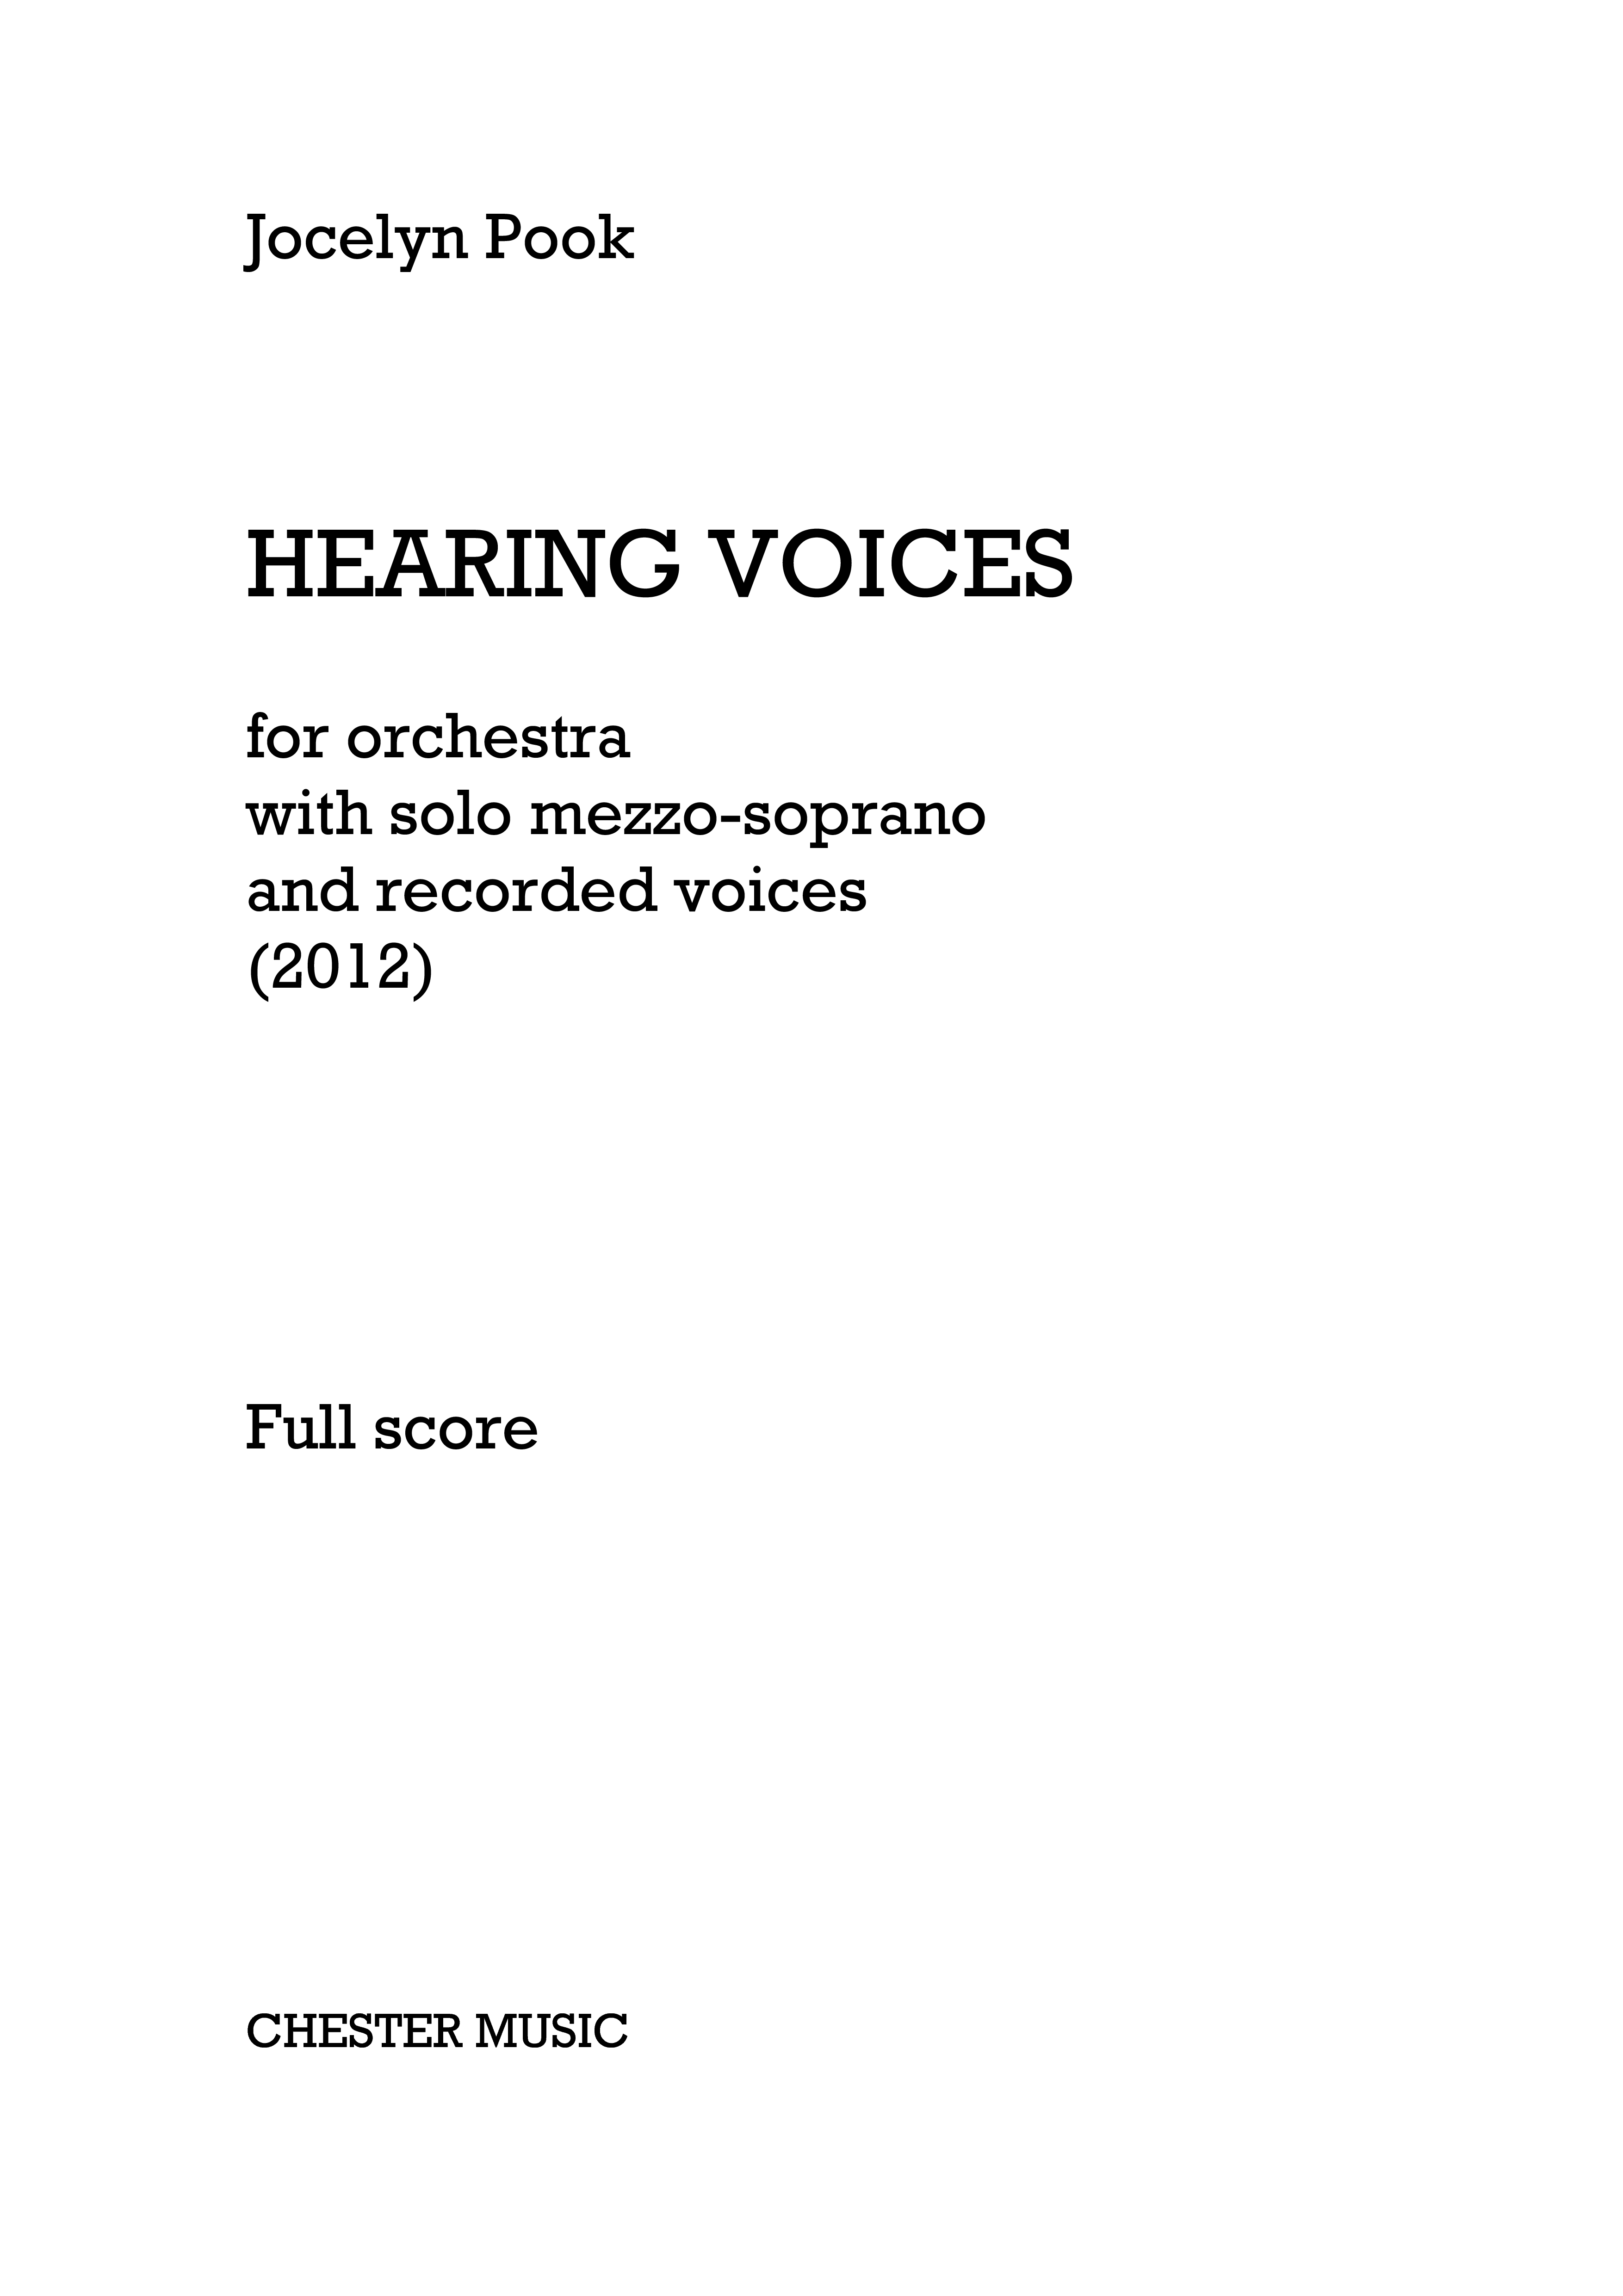 Jocelyn Pook: Hearing Voices (Full Score)